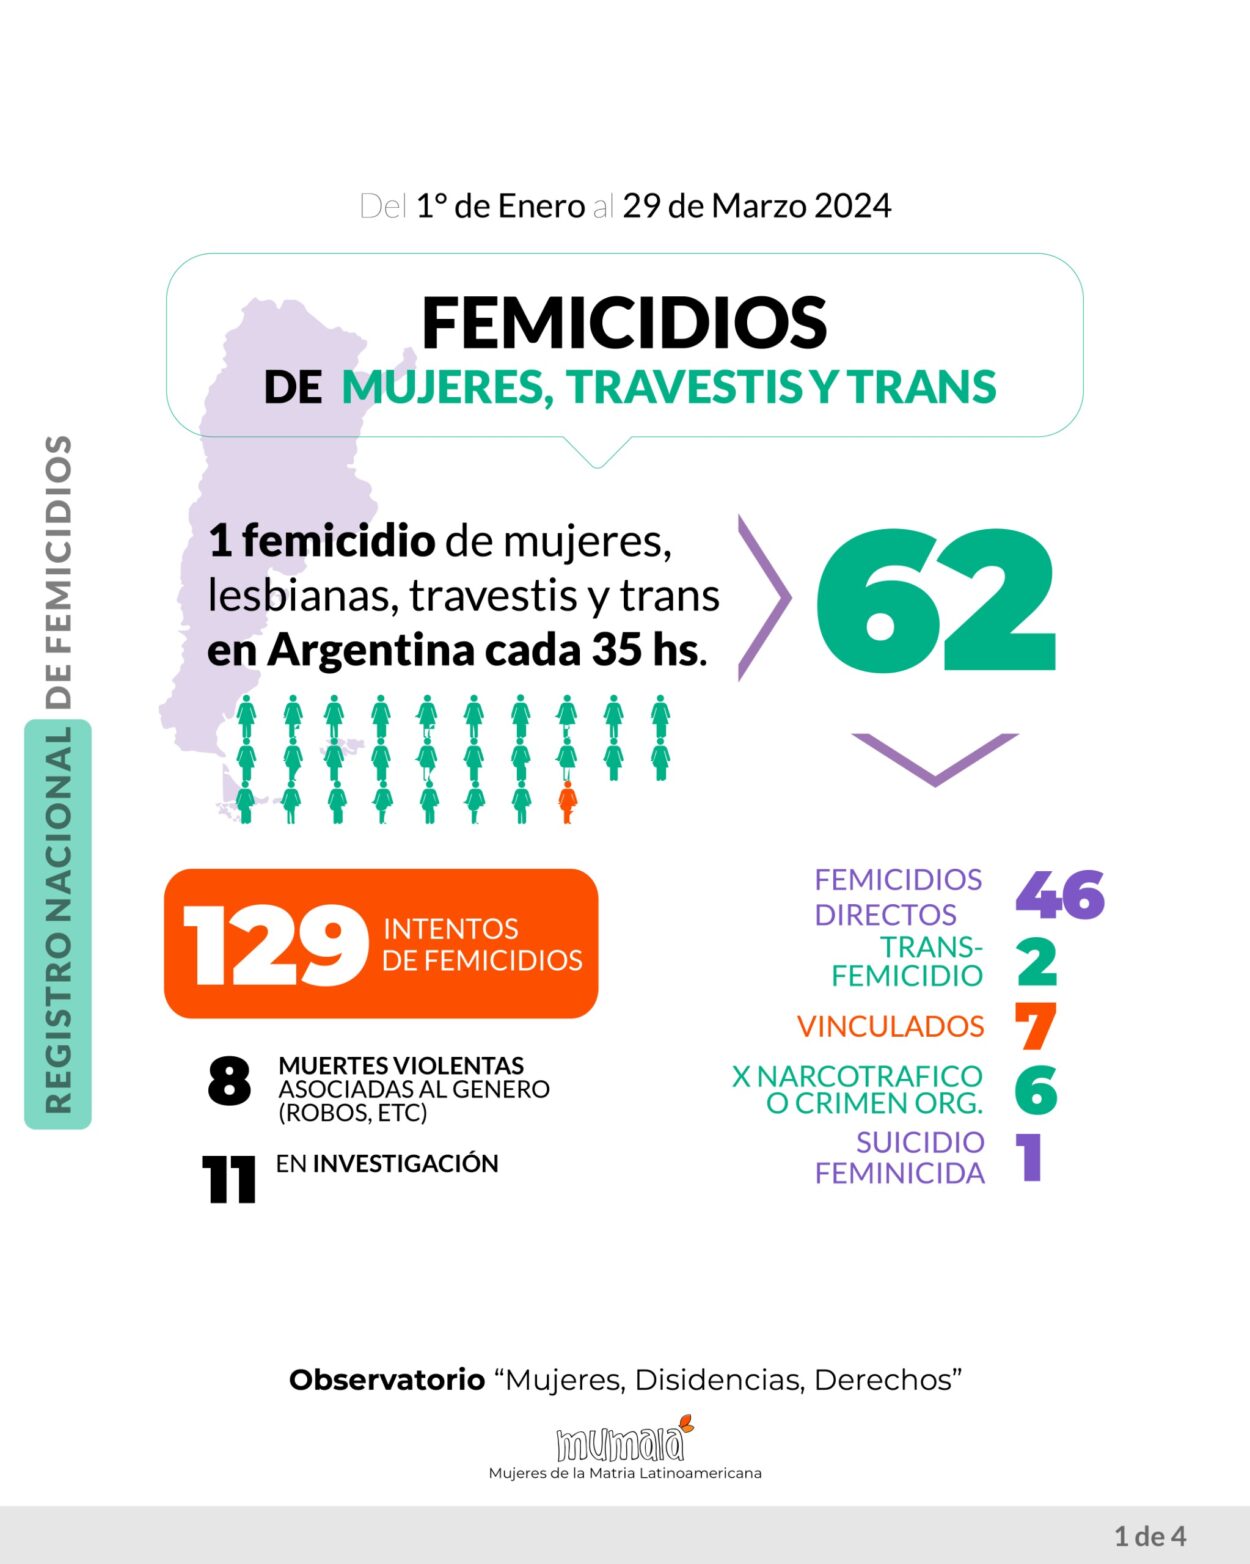 El Observatorio MuMaLa denunció que en 3 meses se han registrado 62 feminicidios, uno cada 35 horas imagen-41